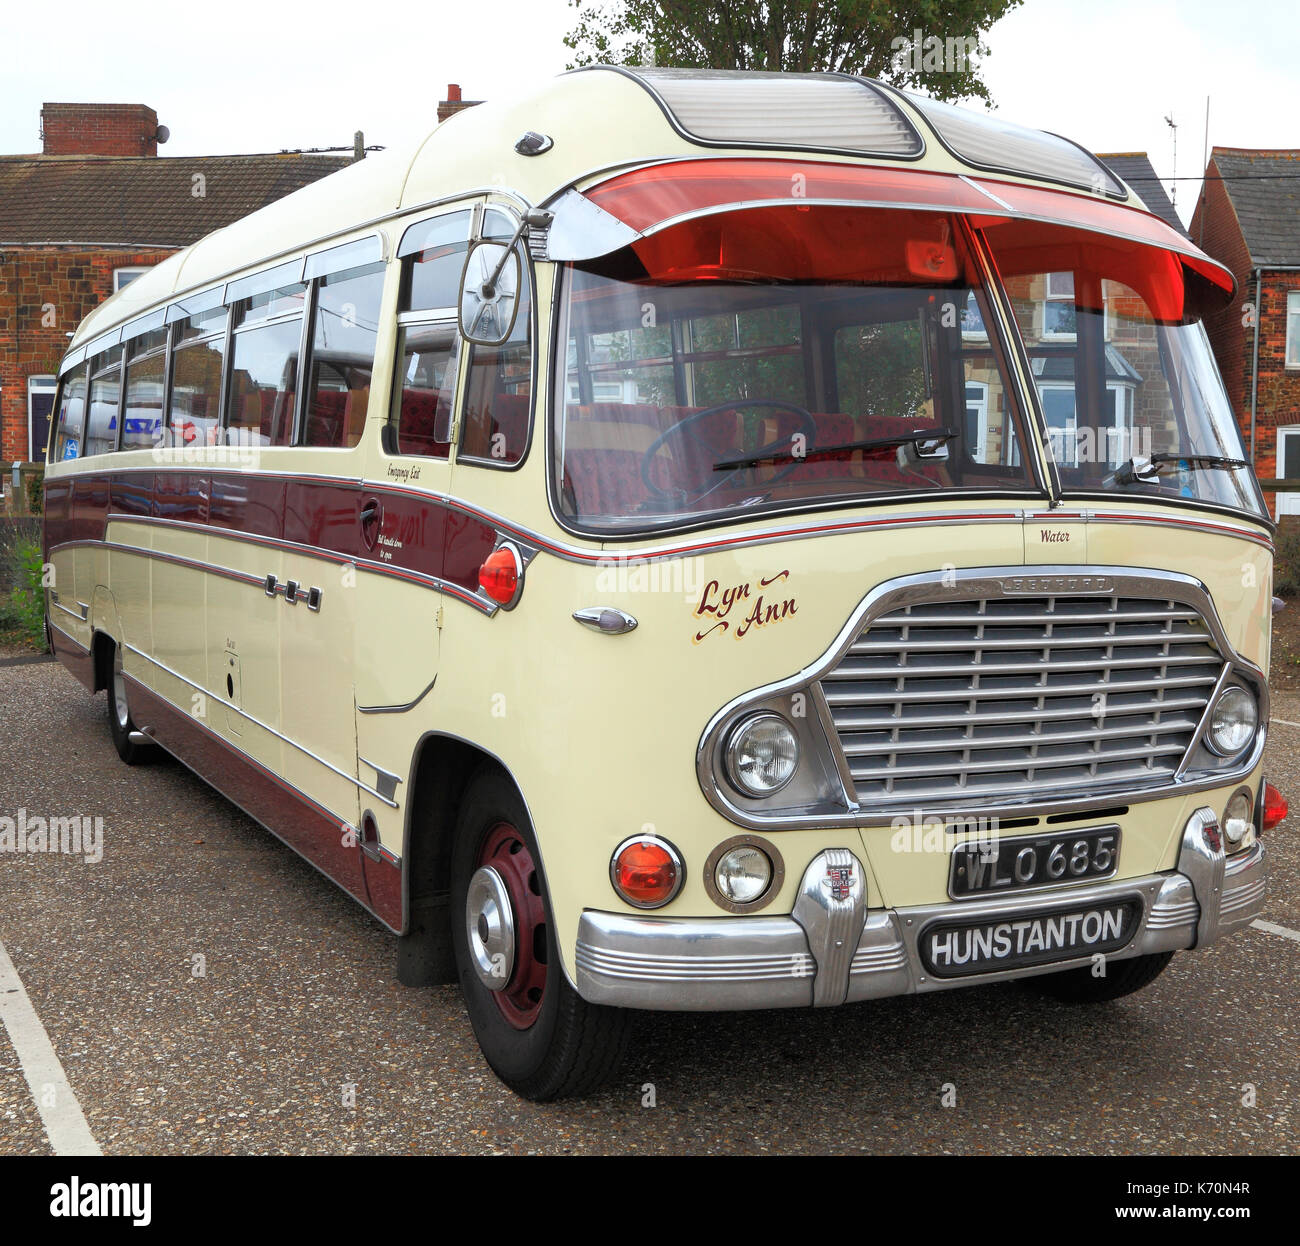 Vintage Car, construit 1959, les entraîneurs, les entraîneurs Spratt, bus, bus, faite par Bedford, Wreningham, Norfolk, England, UK Banque D'Images